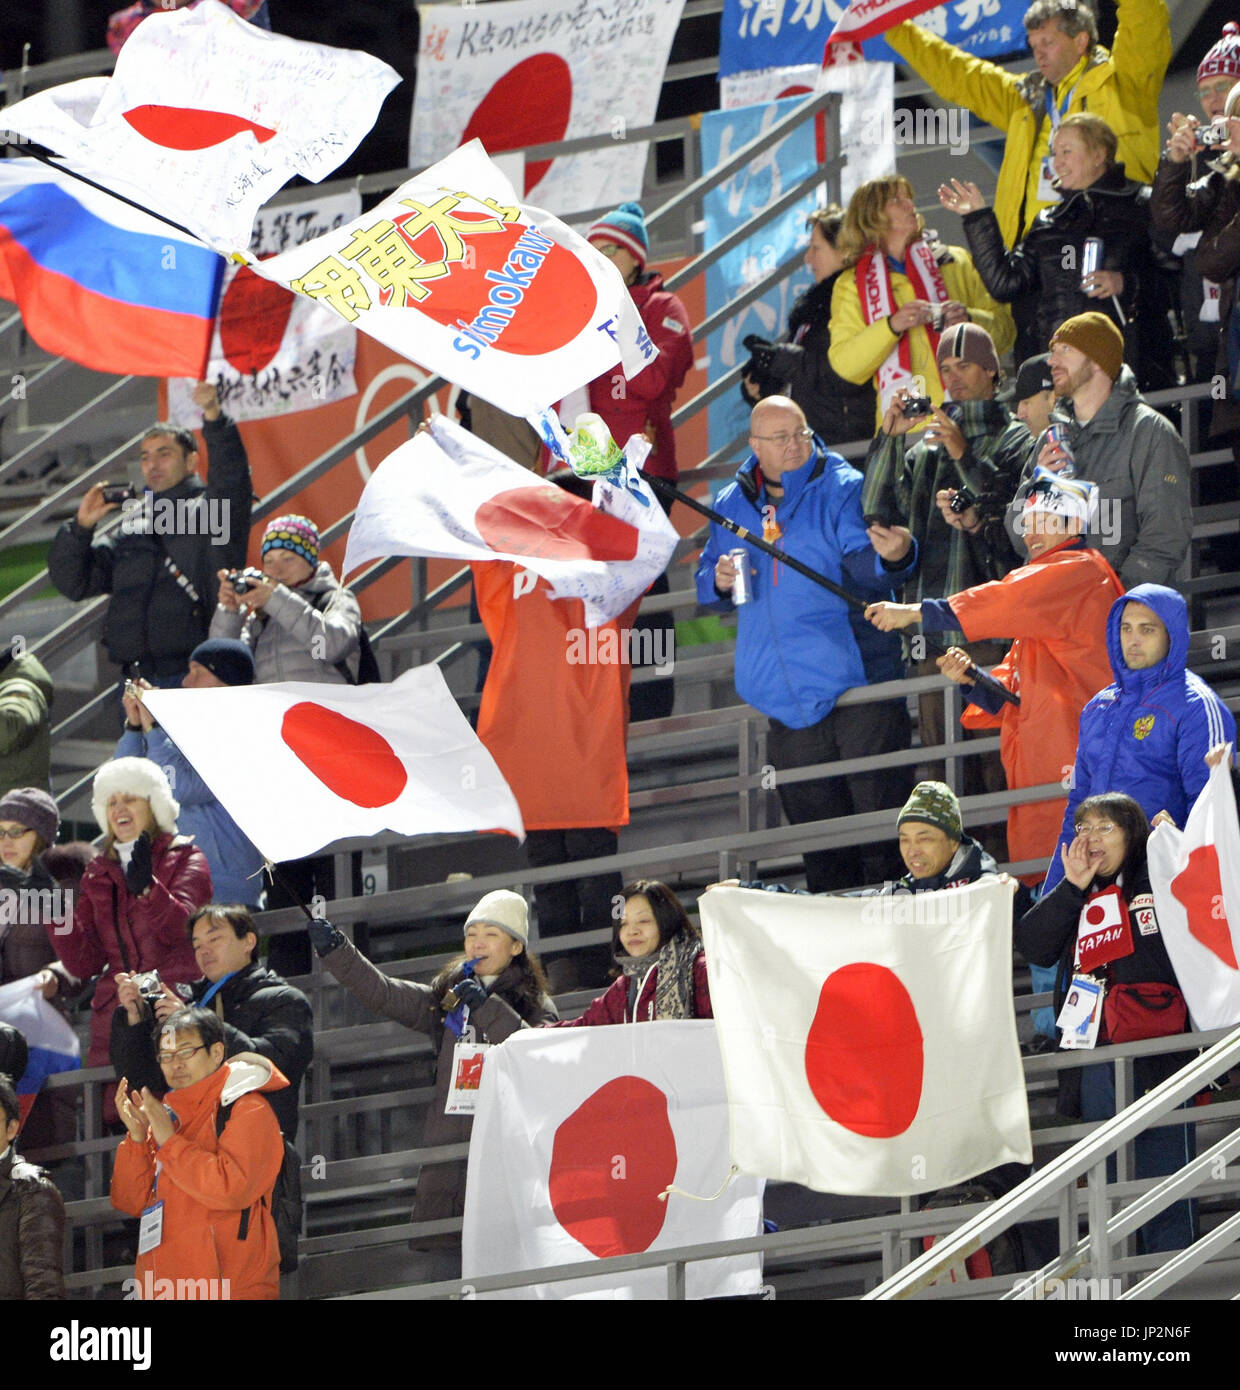 SOCHI, Rusia - Ventiladores aplaudir los puentes japoneses después de que ganó la medalla de bronce en el equipo masculino de saltos de esquí en el centro RusSki Gorki saltar durante los Juegos Olímpicos de Sochi en Rusia el 17 de febrero de 2014. (Kyodo) Foto de stock